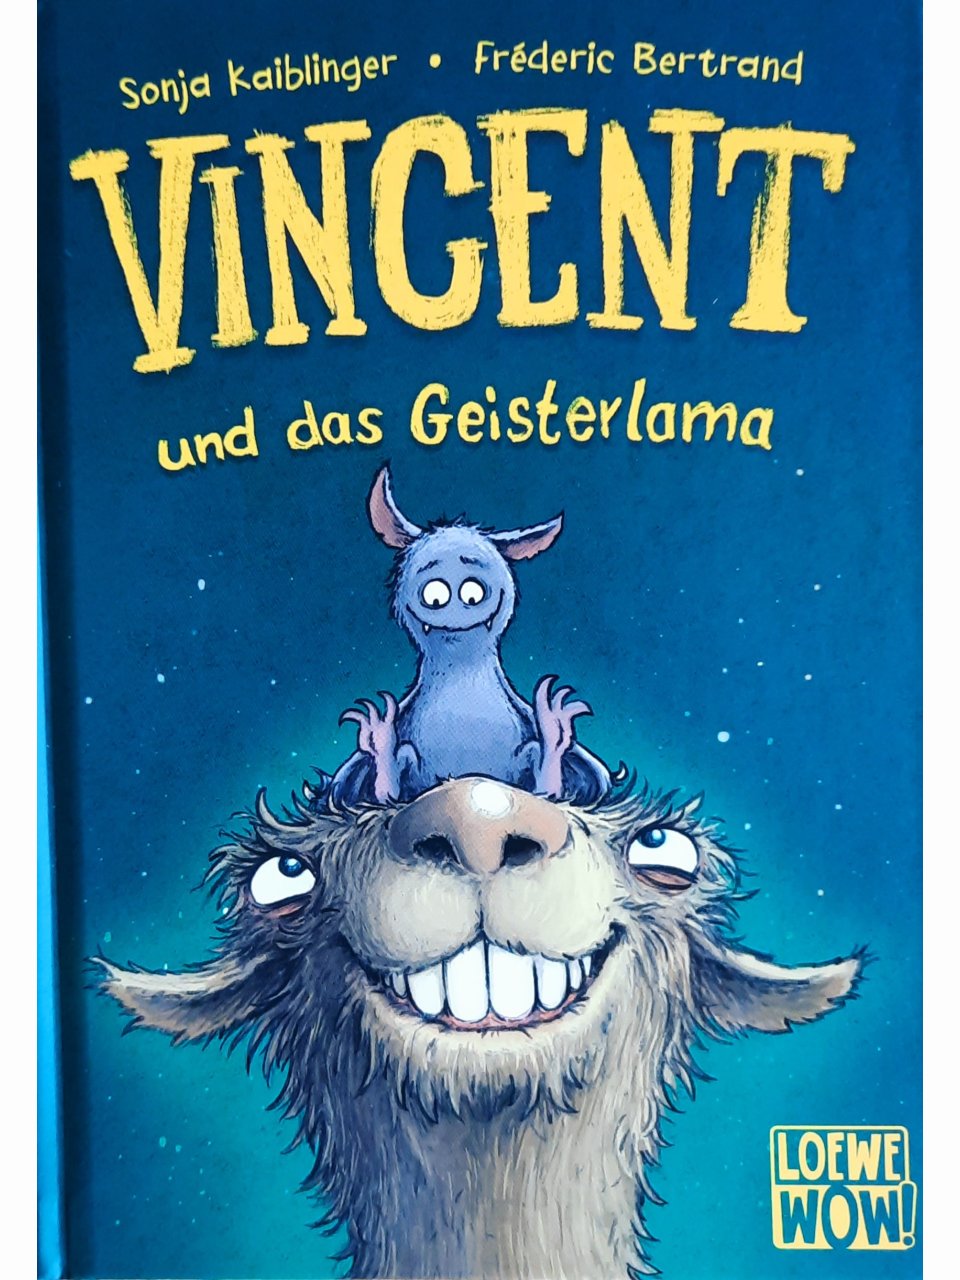 Vincent 2 - und das Geisterlama